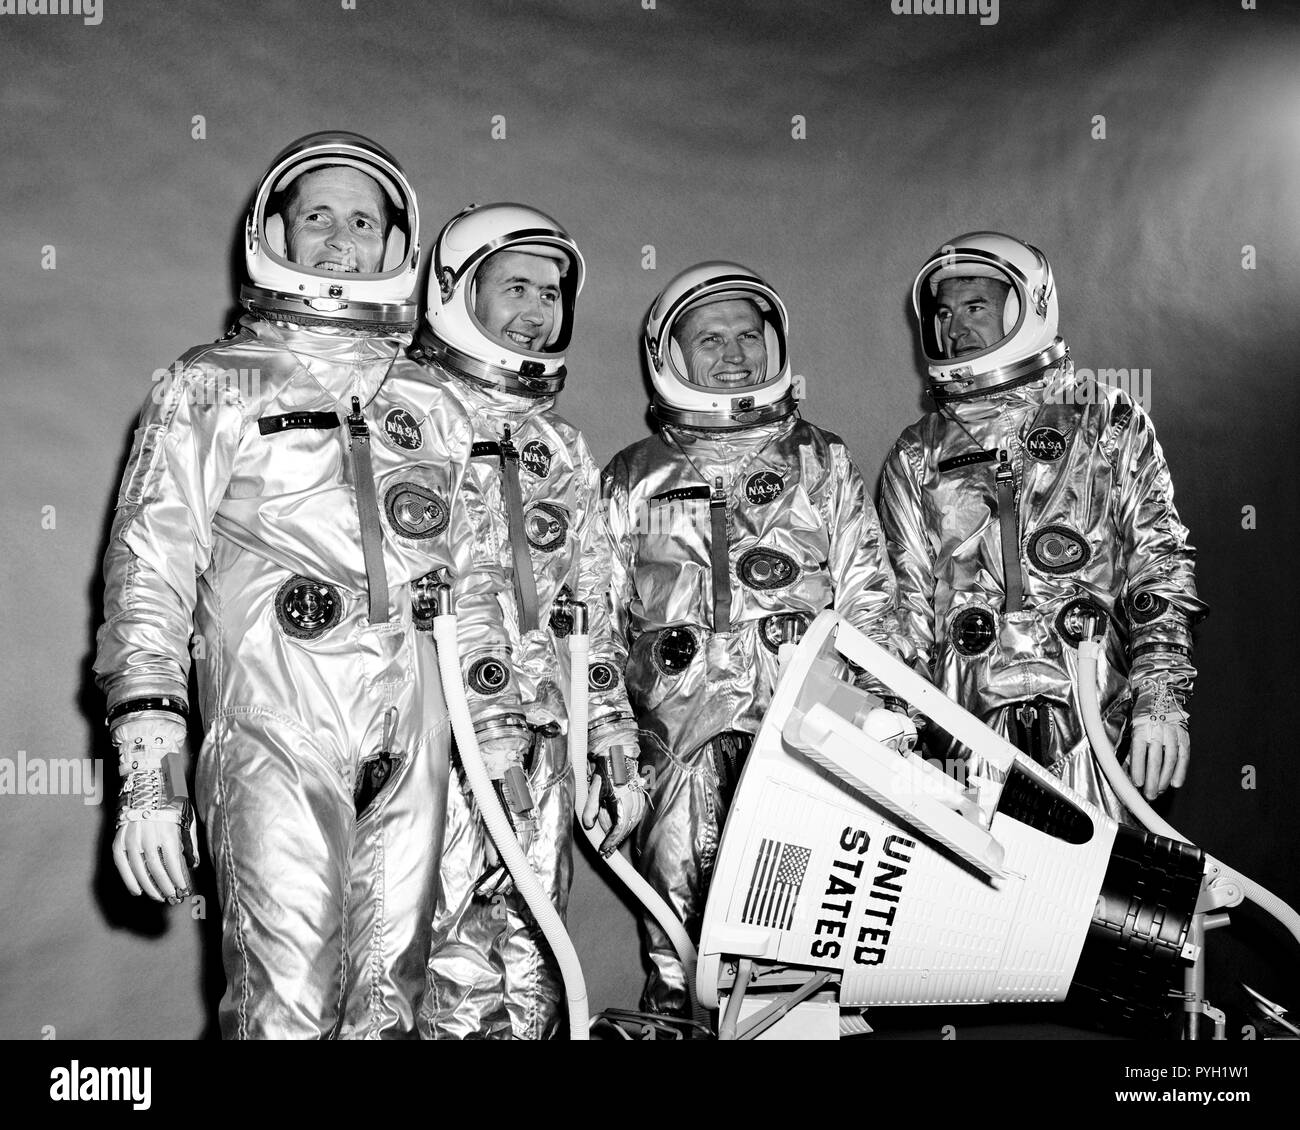 (10 Sett. 1964) --- Vista della Gemini-4 Il primo equipaggio e equipaggio di riserva di pressione adatta. Essi sono in piedi intorno a un modello di veicolo spaziale Gemini. Da sinistra a destra gli astronauti sono Edward H. White II, pilota; James McDivitt A., il comando pilota; Frank Borman e James A. Lovell Jr., equipaggio di riserva. Foto Stock